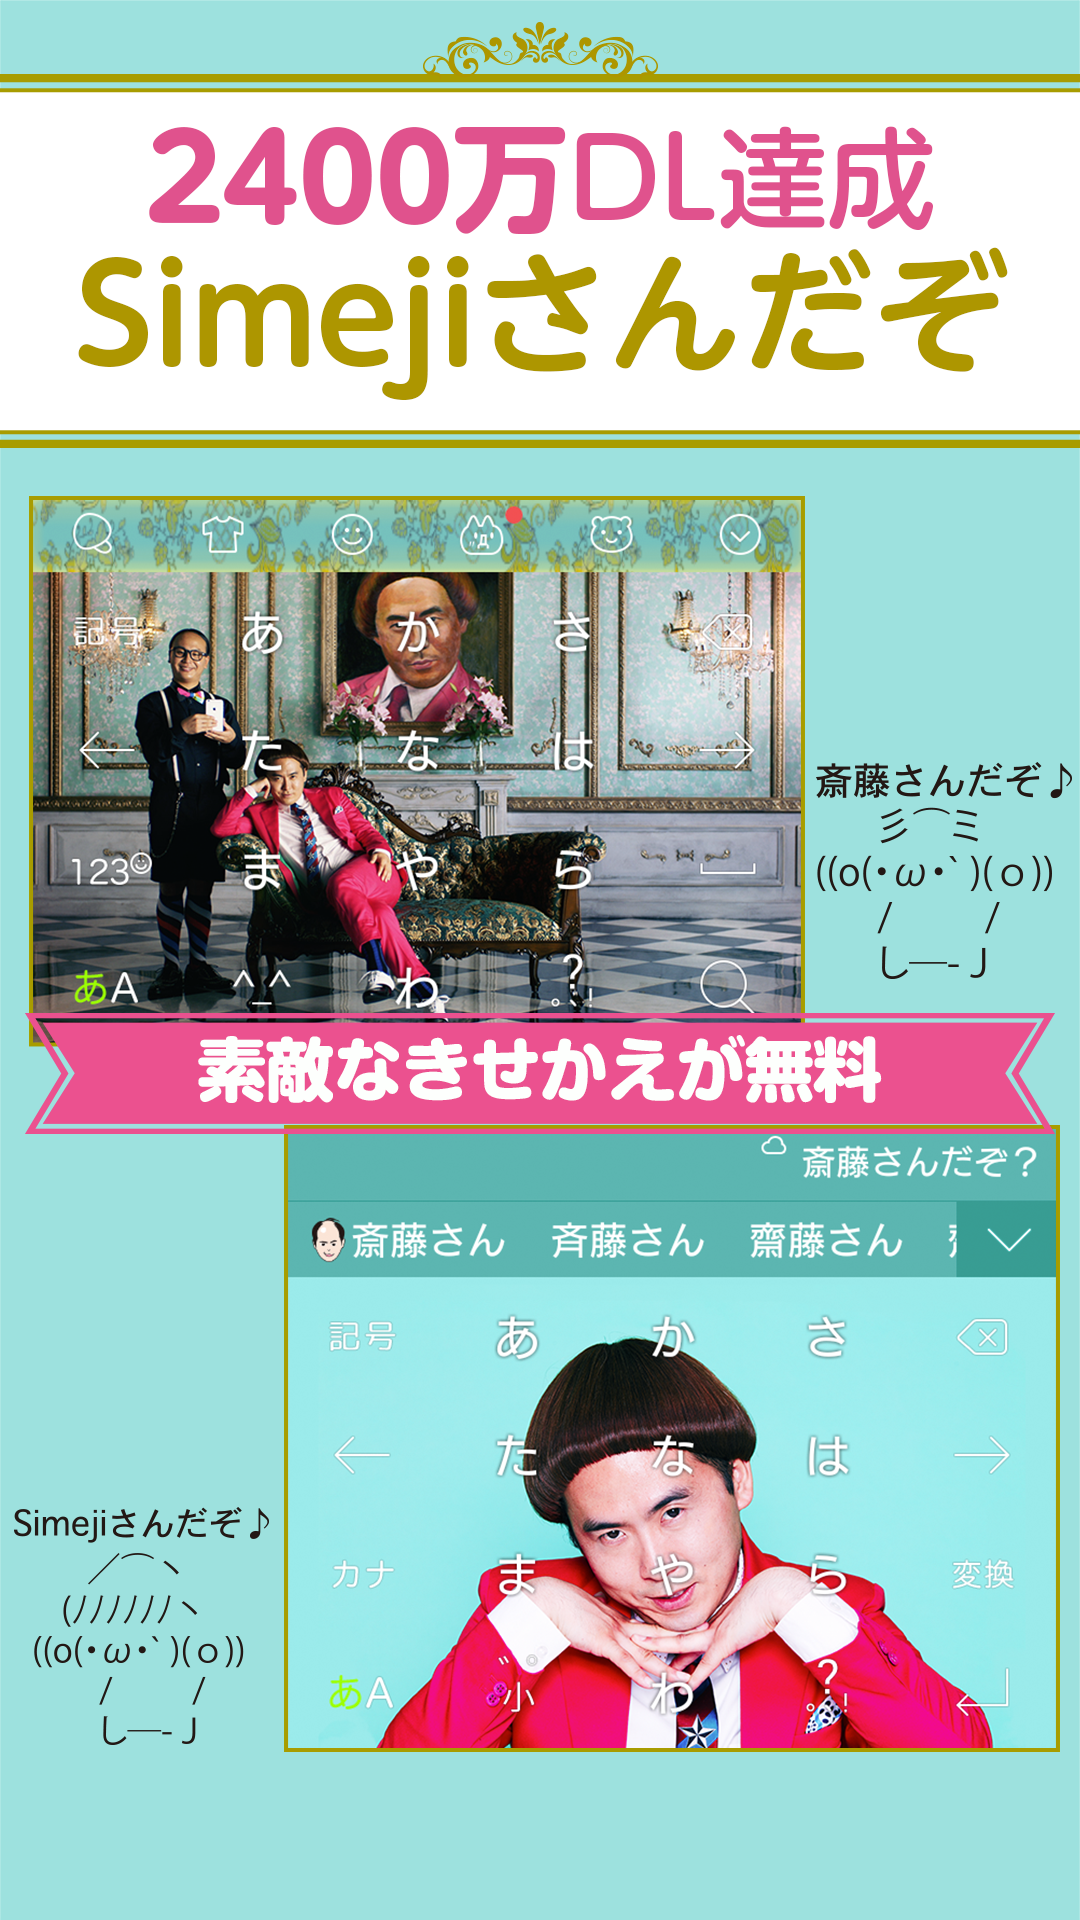 Android application Simeji Japanese keyboard+Emoji screenshort